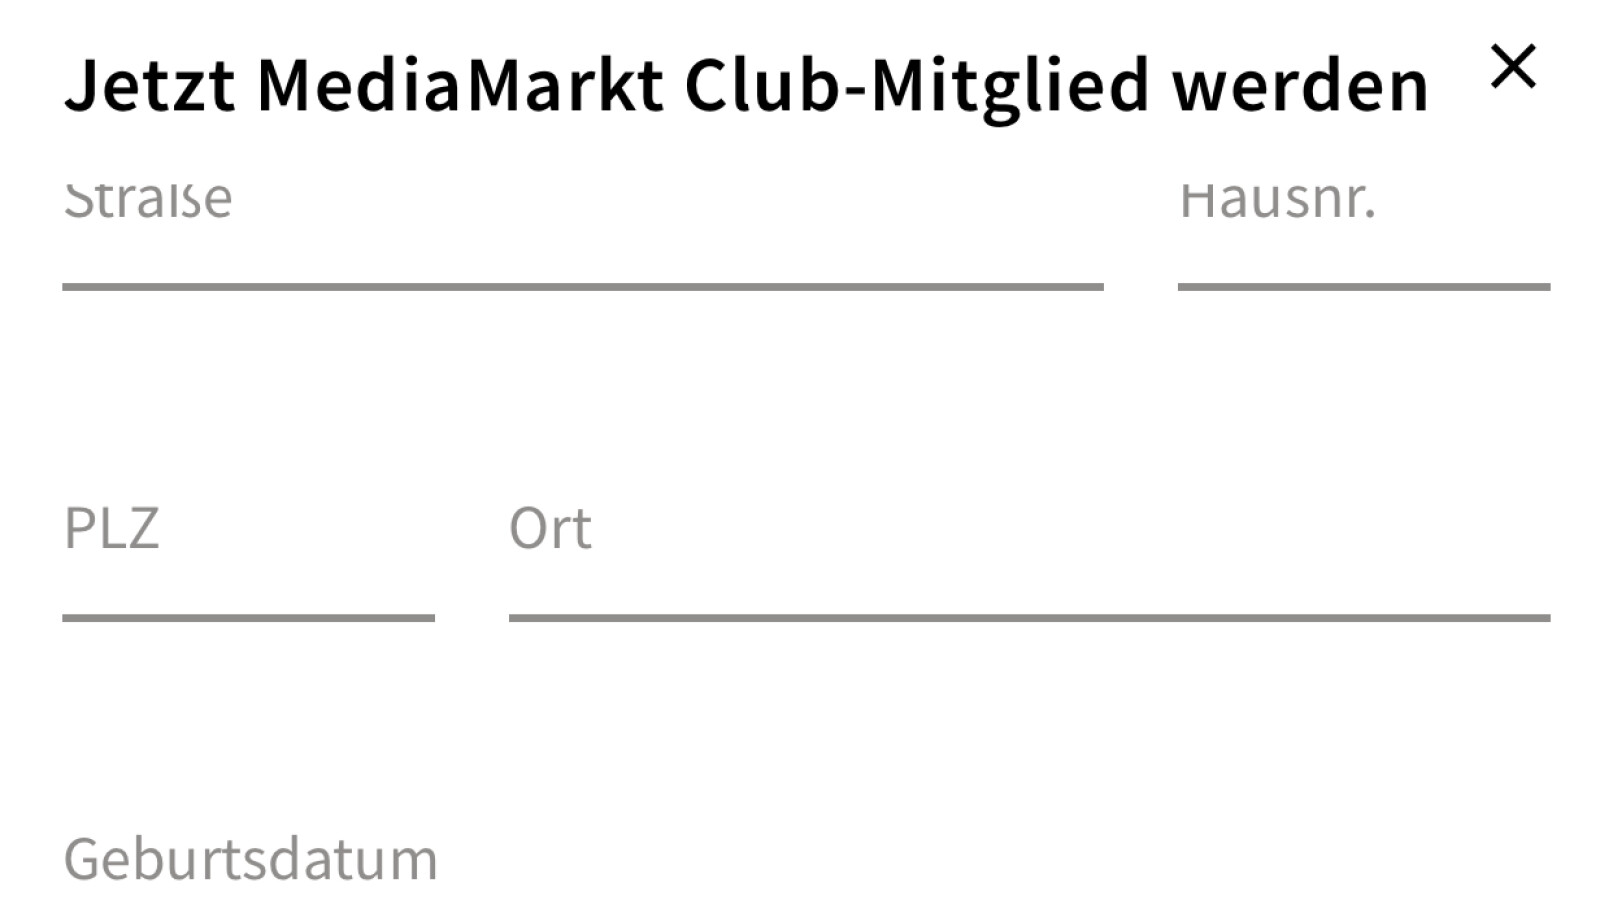 Media Markt Login: Anmelden für Club Karte und Online-Shop